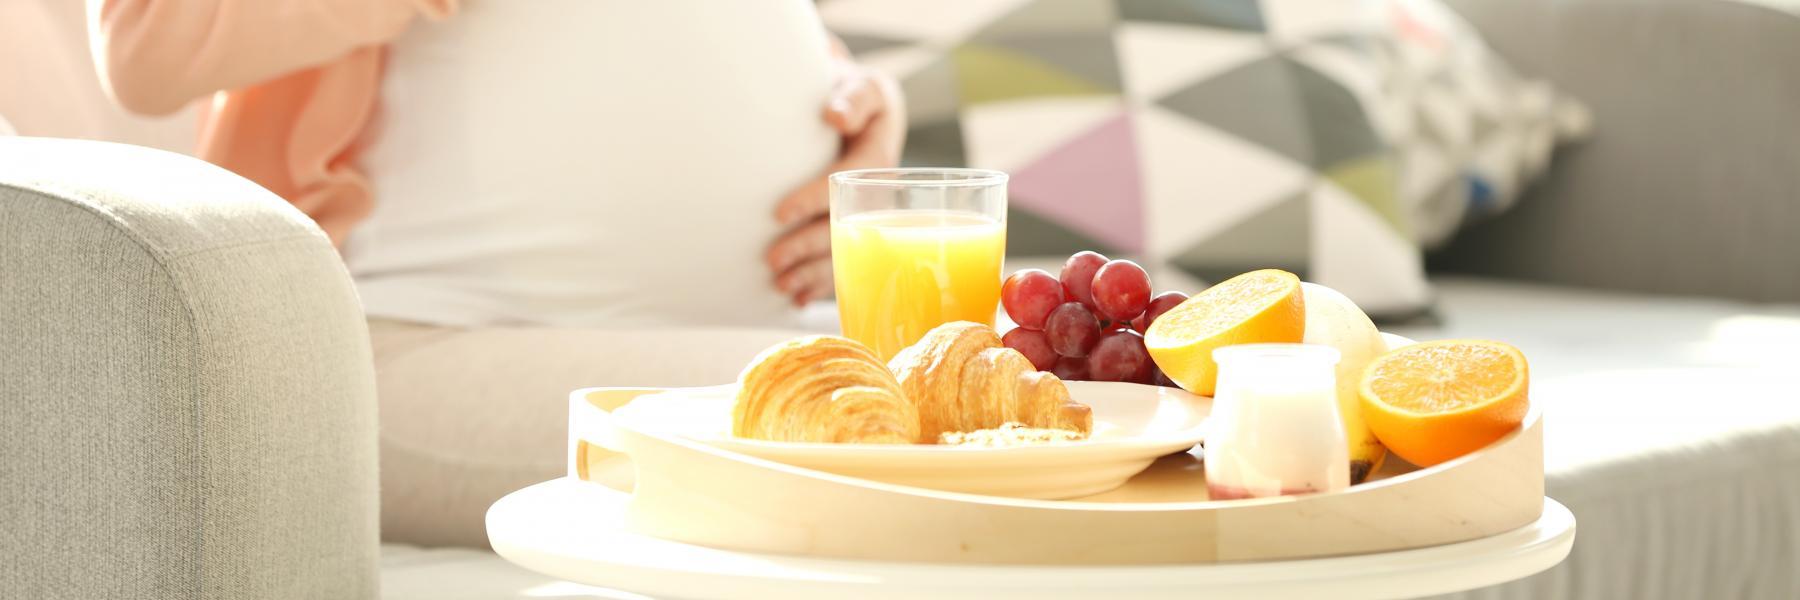 9 أطعمة صحية ينصح للحامل تناولها